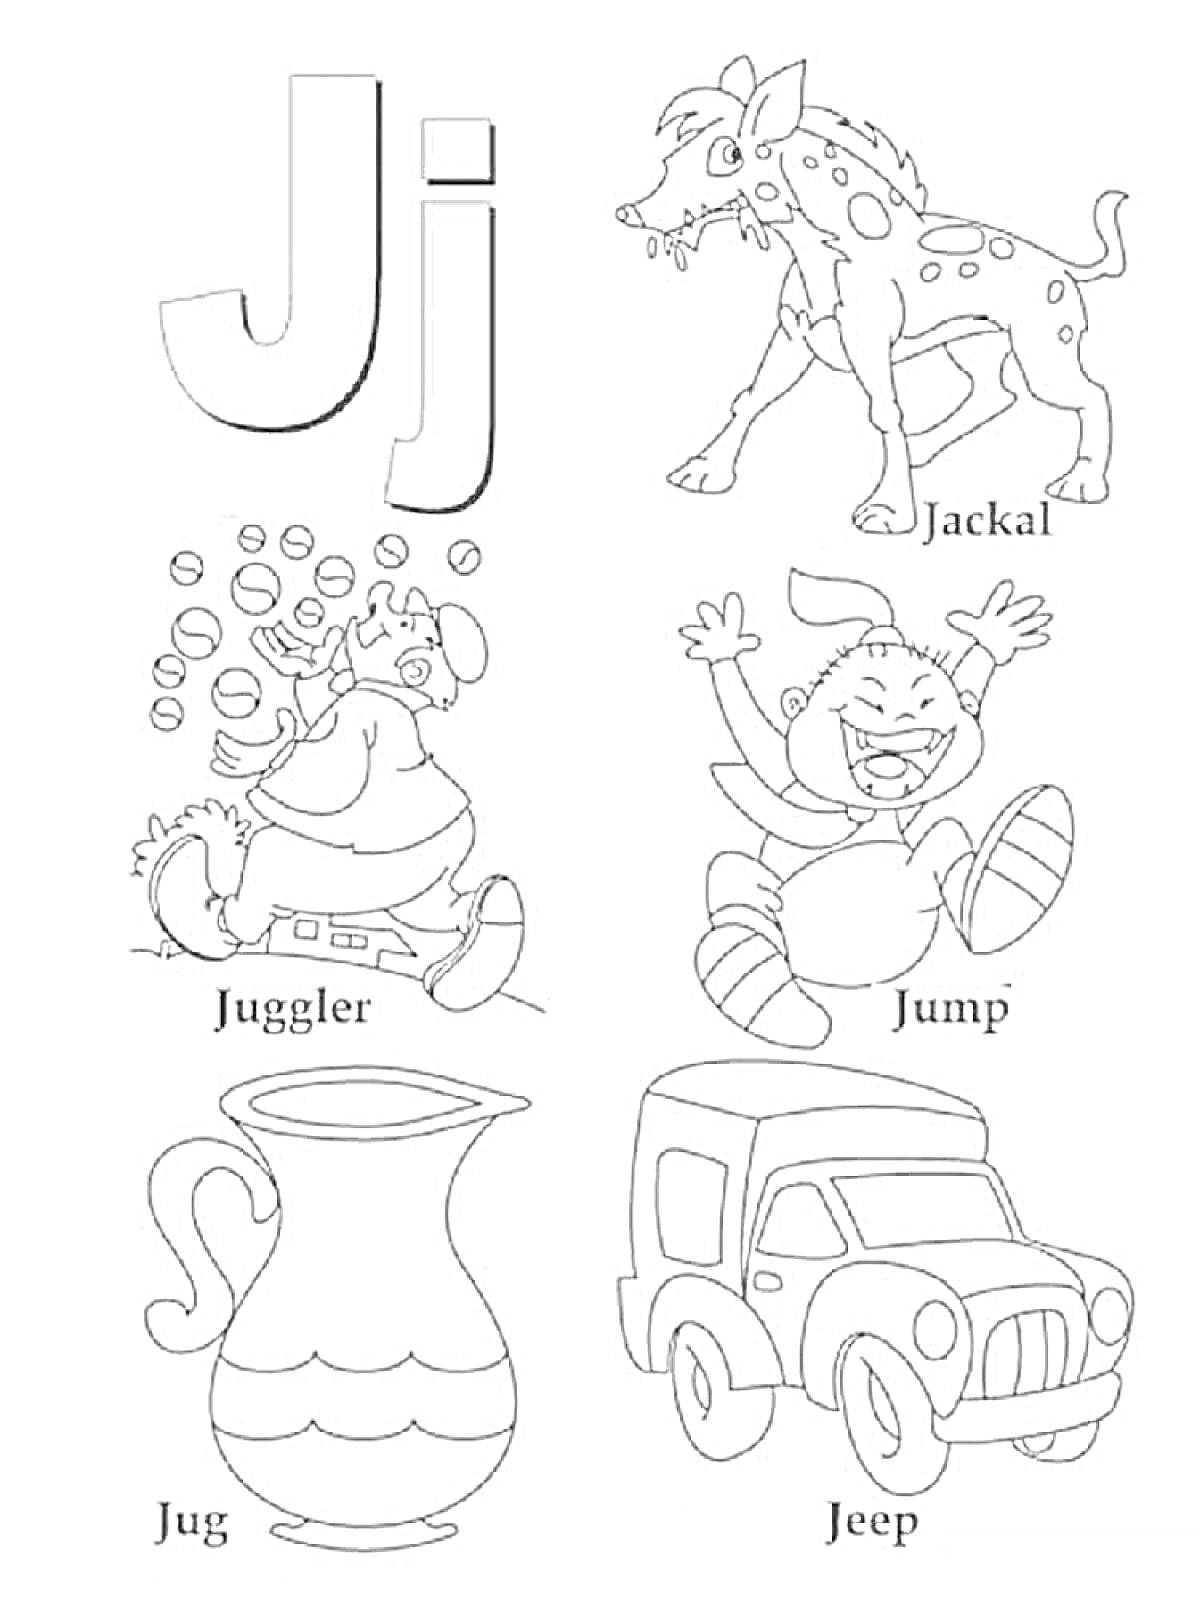 Раскраска буква J с изображениями гиены, жонглера, прыжков, кувшина и джипа